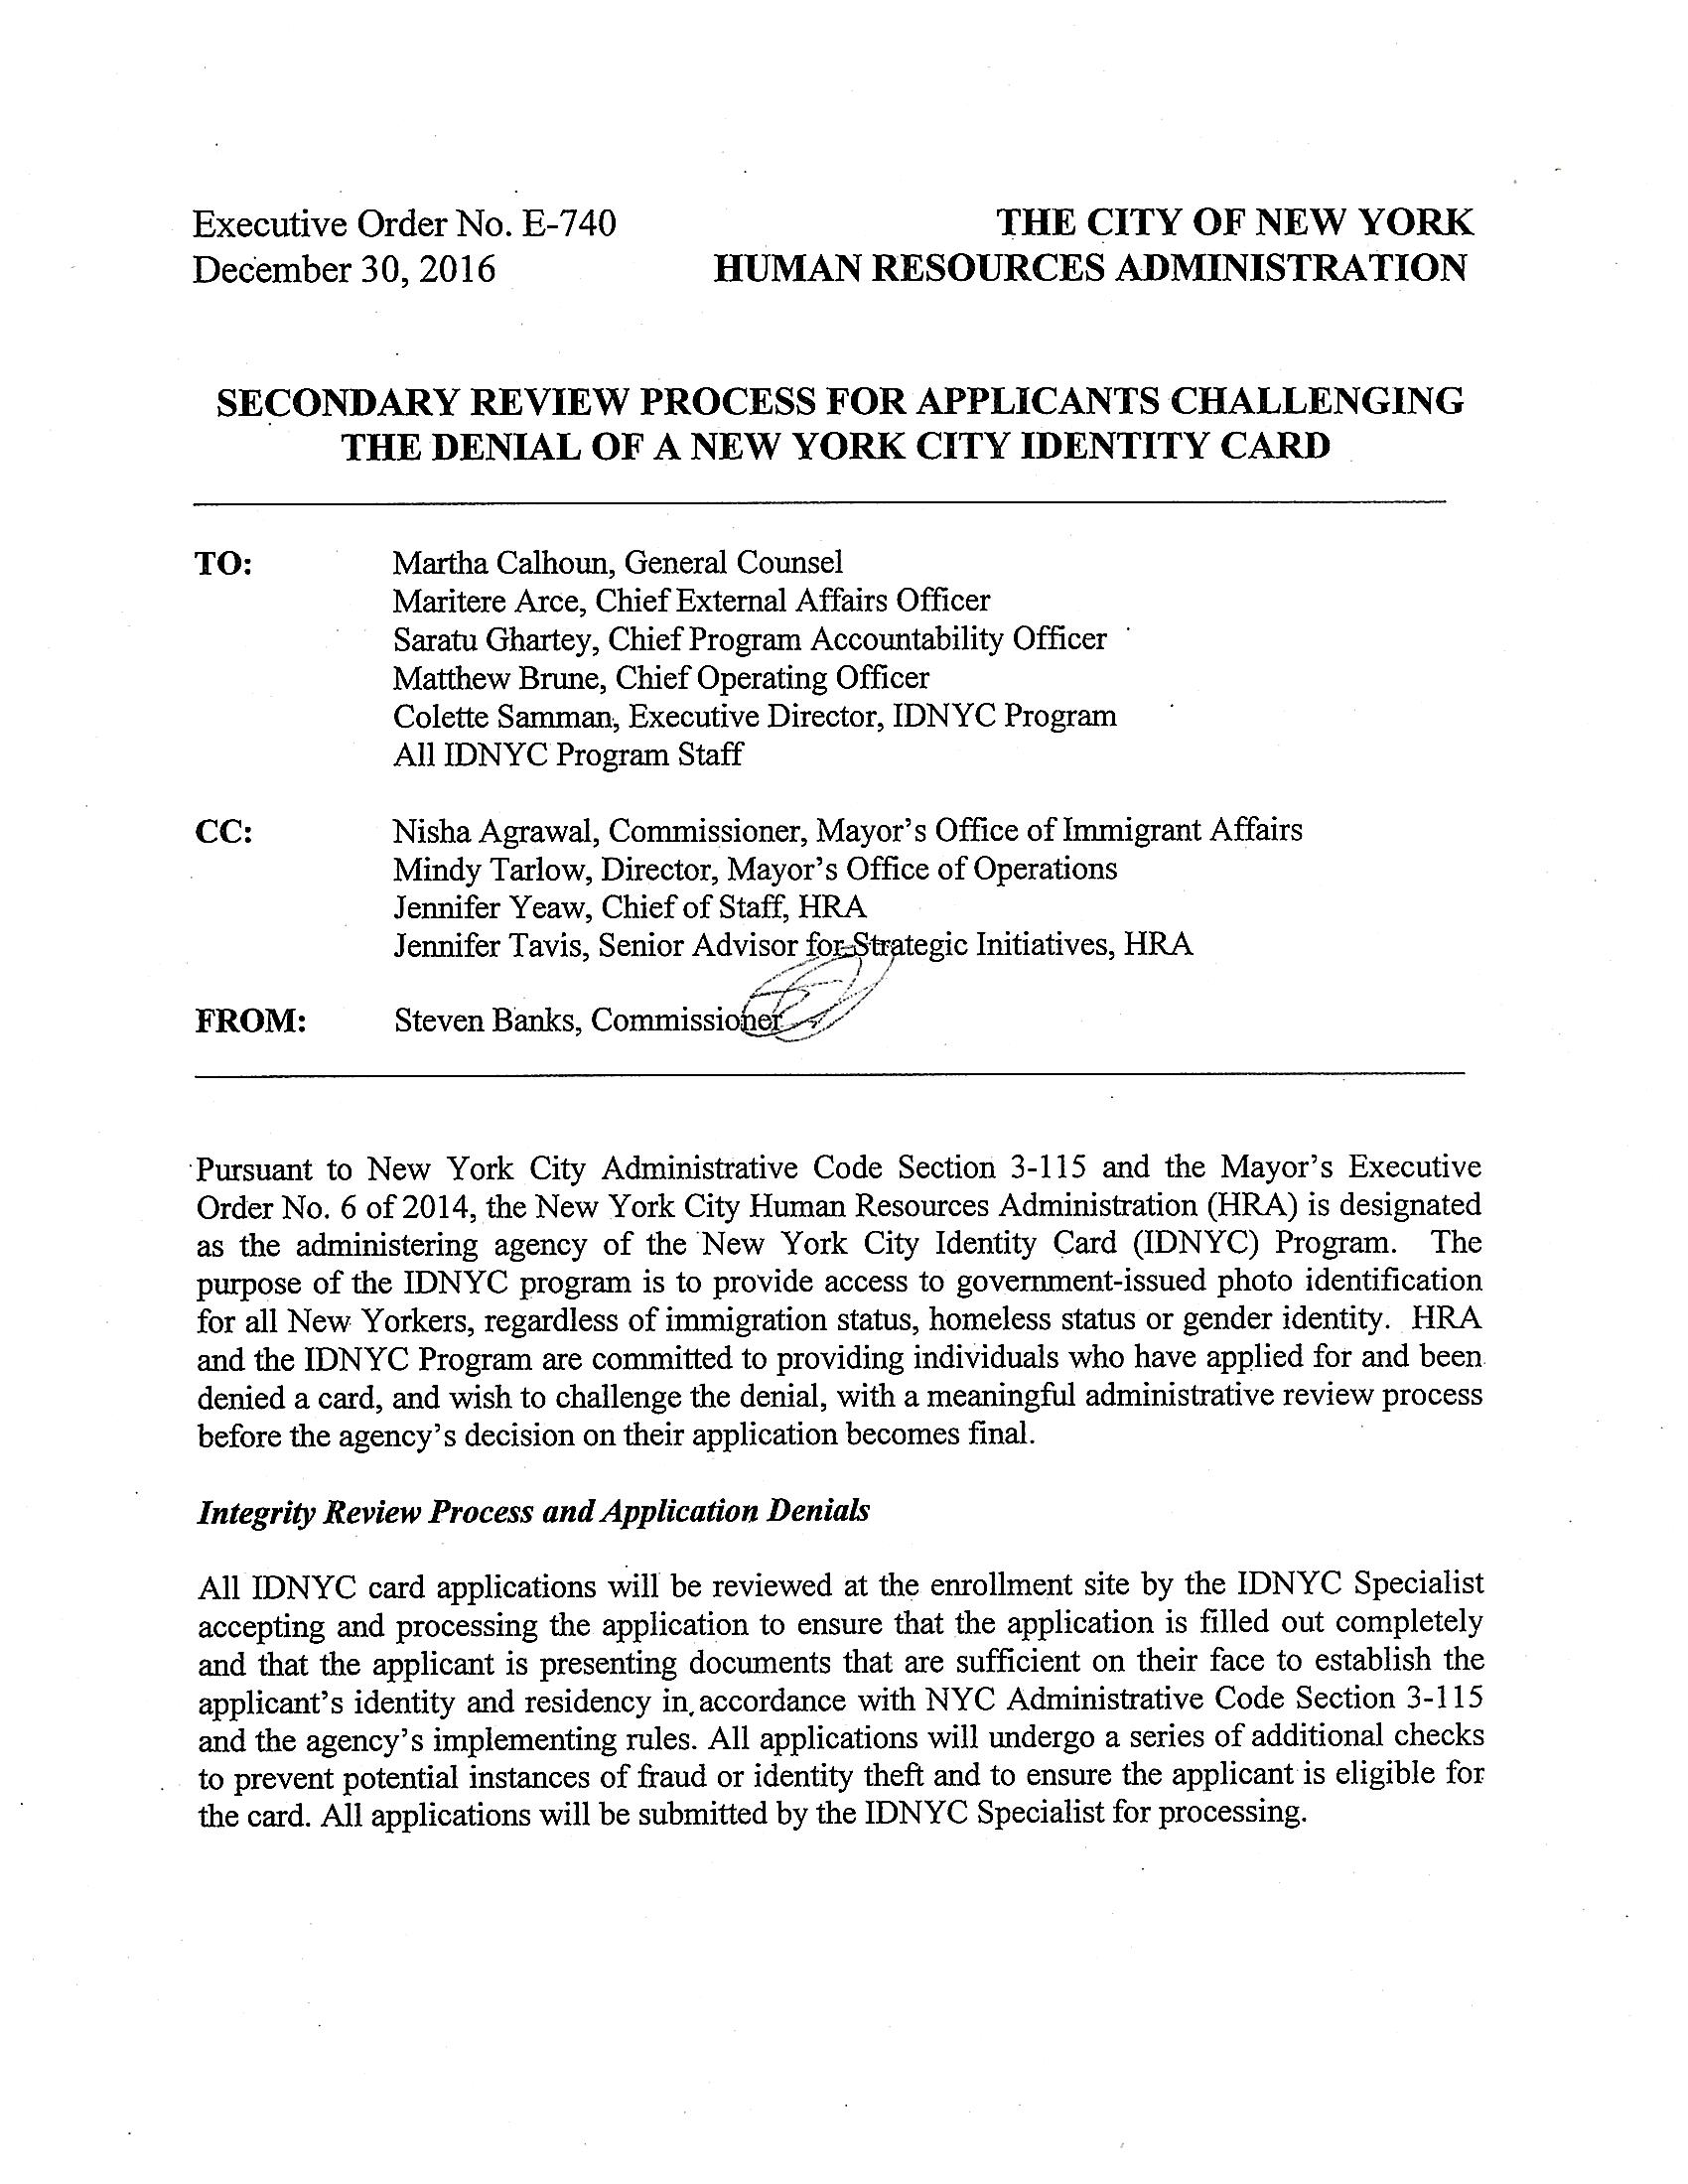 HRA Executive Order No. E-750 Report cover